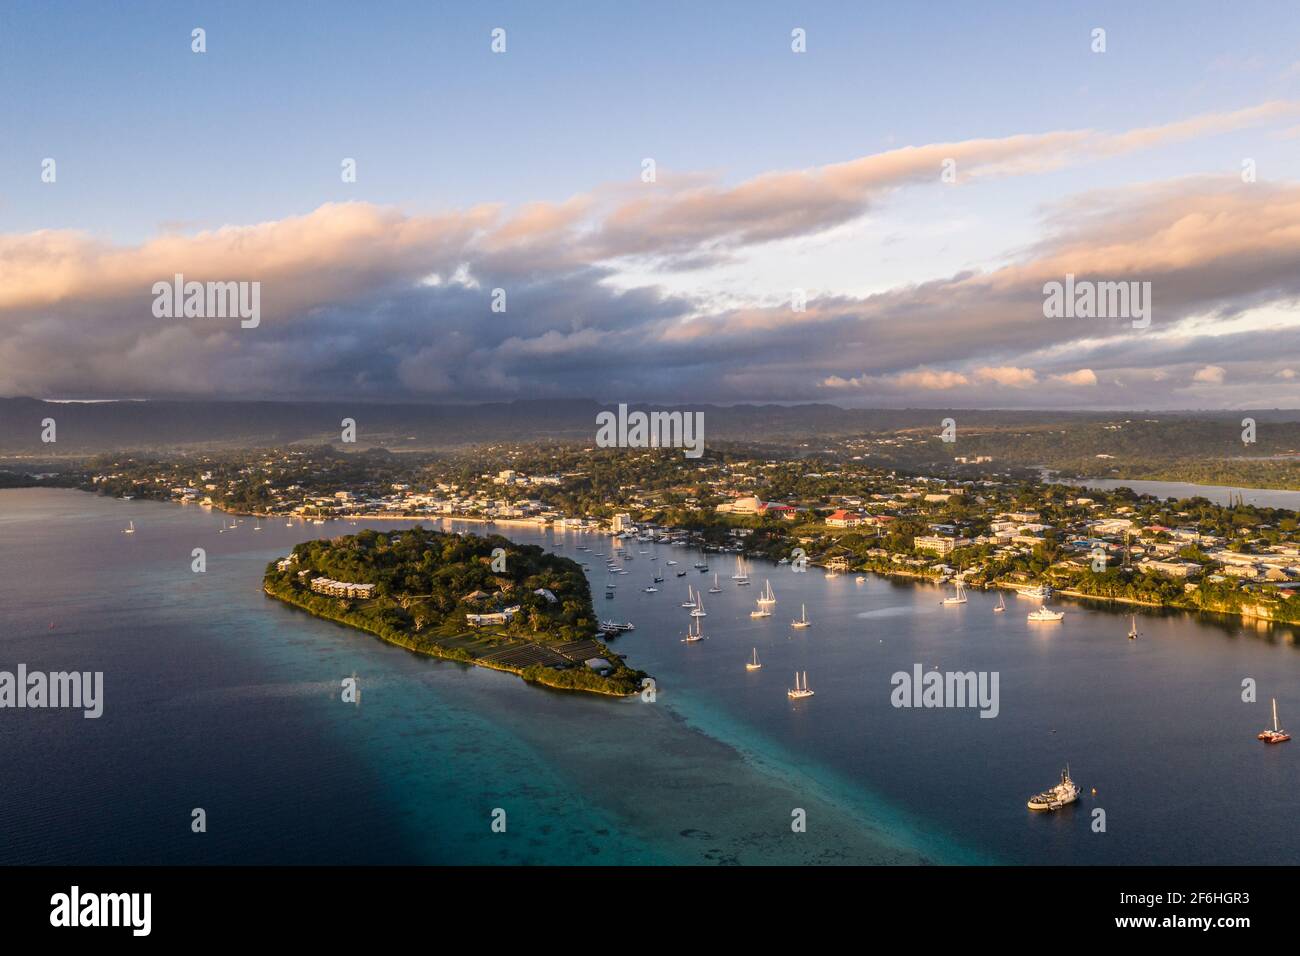 Vue aérienne du coucher de soleil sur la baie de Port Vila et l'île Iririki Resort à Port Vila, capitale du Vanuatu dans l'océan Pacifique Banque D'Images